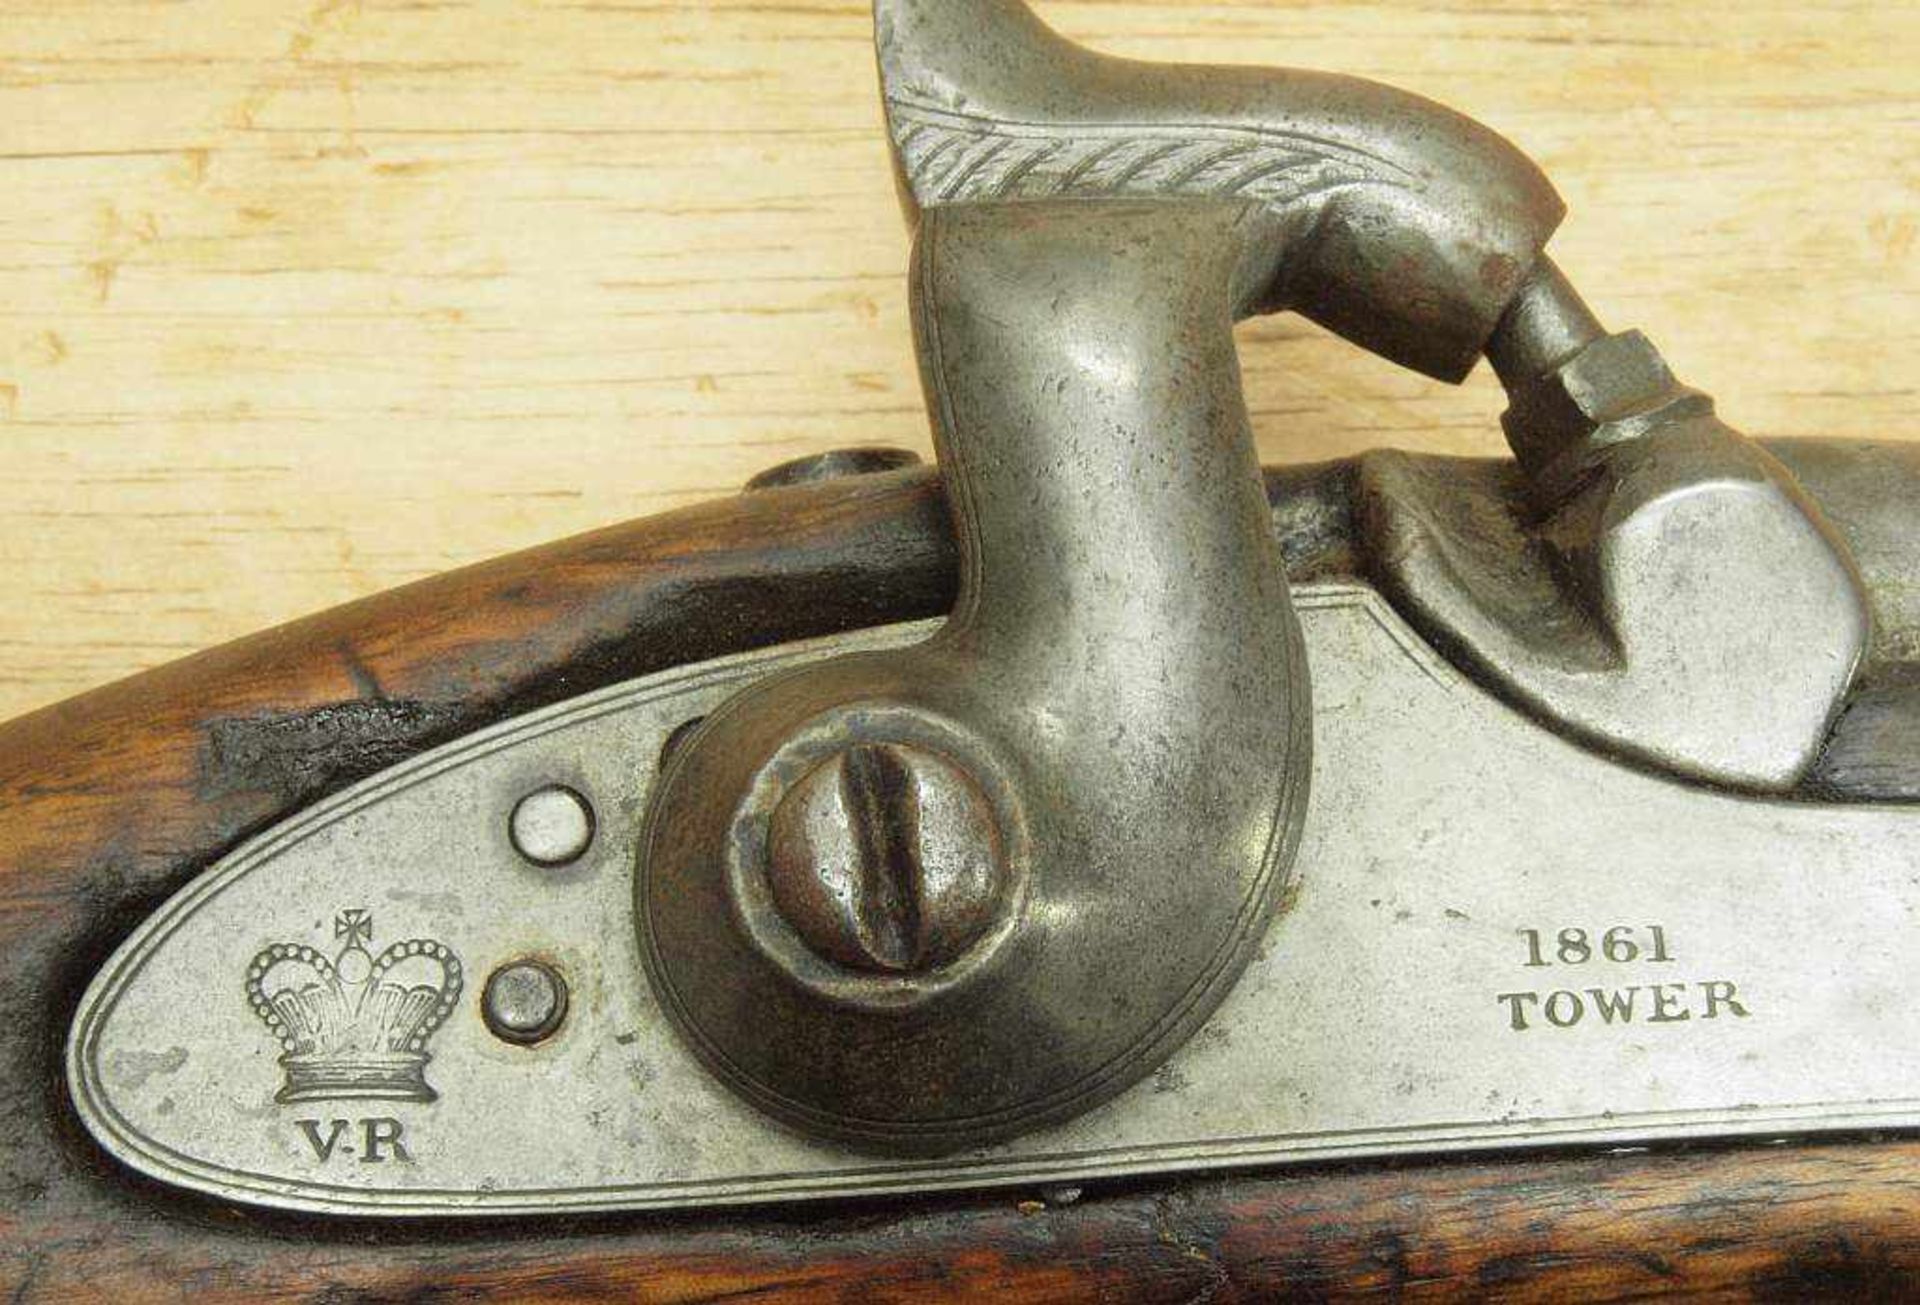 Vorderlader. (Gewehr). Vorderlader. (Gewehr) . England, Hersteller Firma Tower, Baujahr 1861. - Bild 5 aus 5